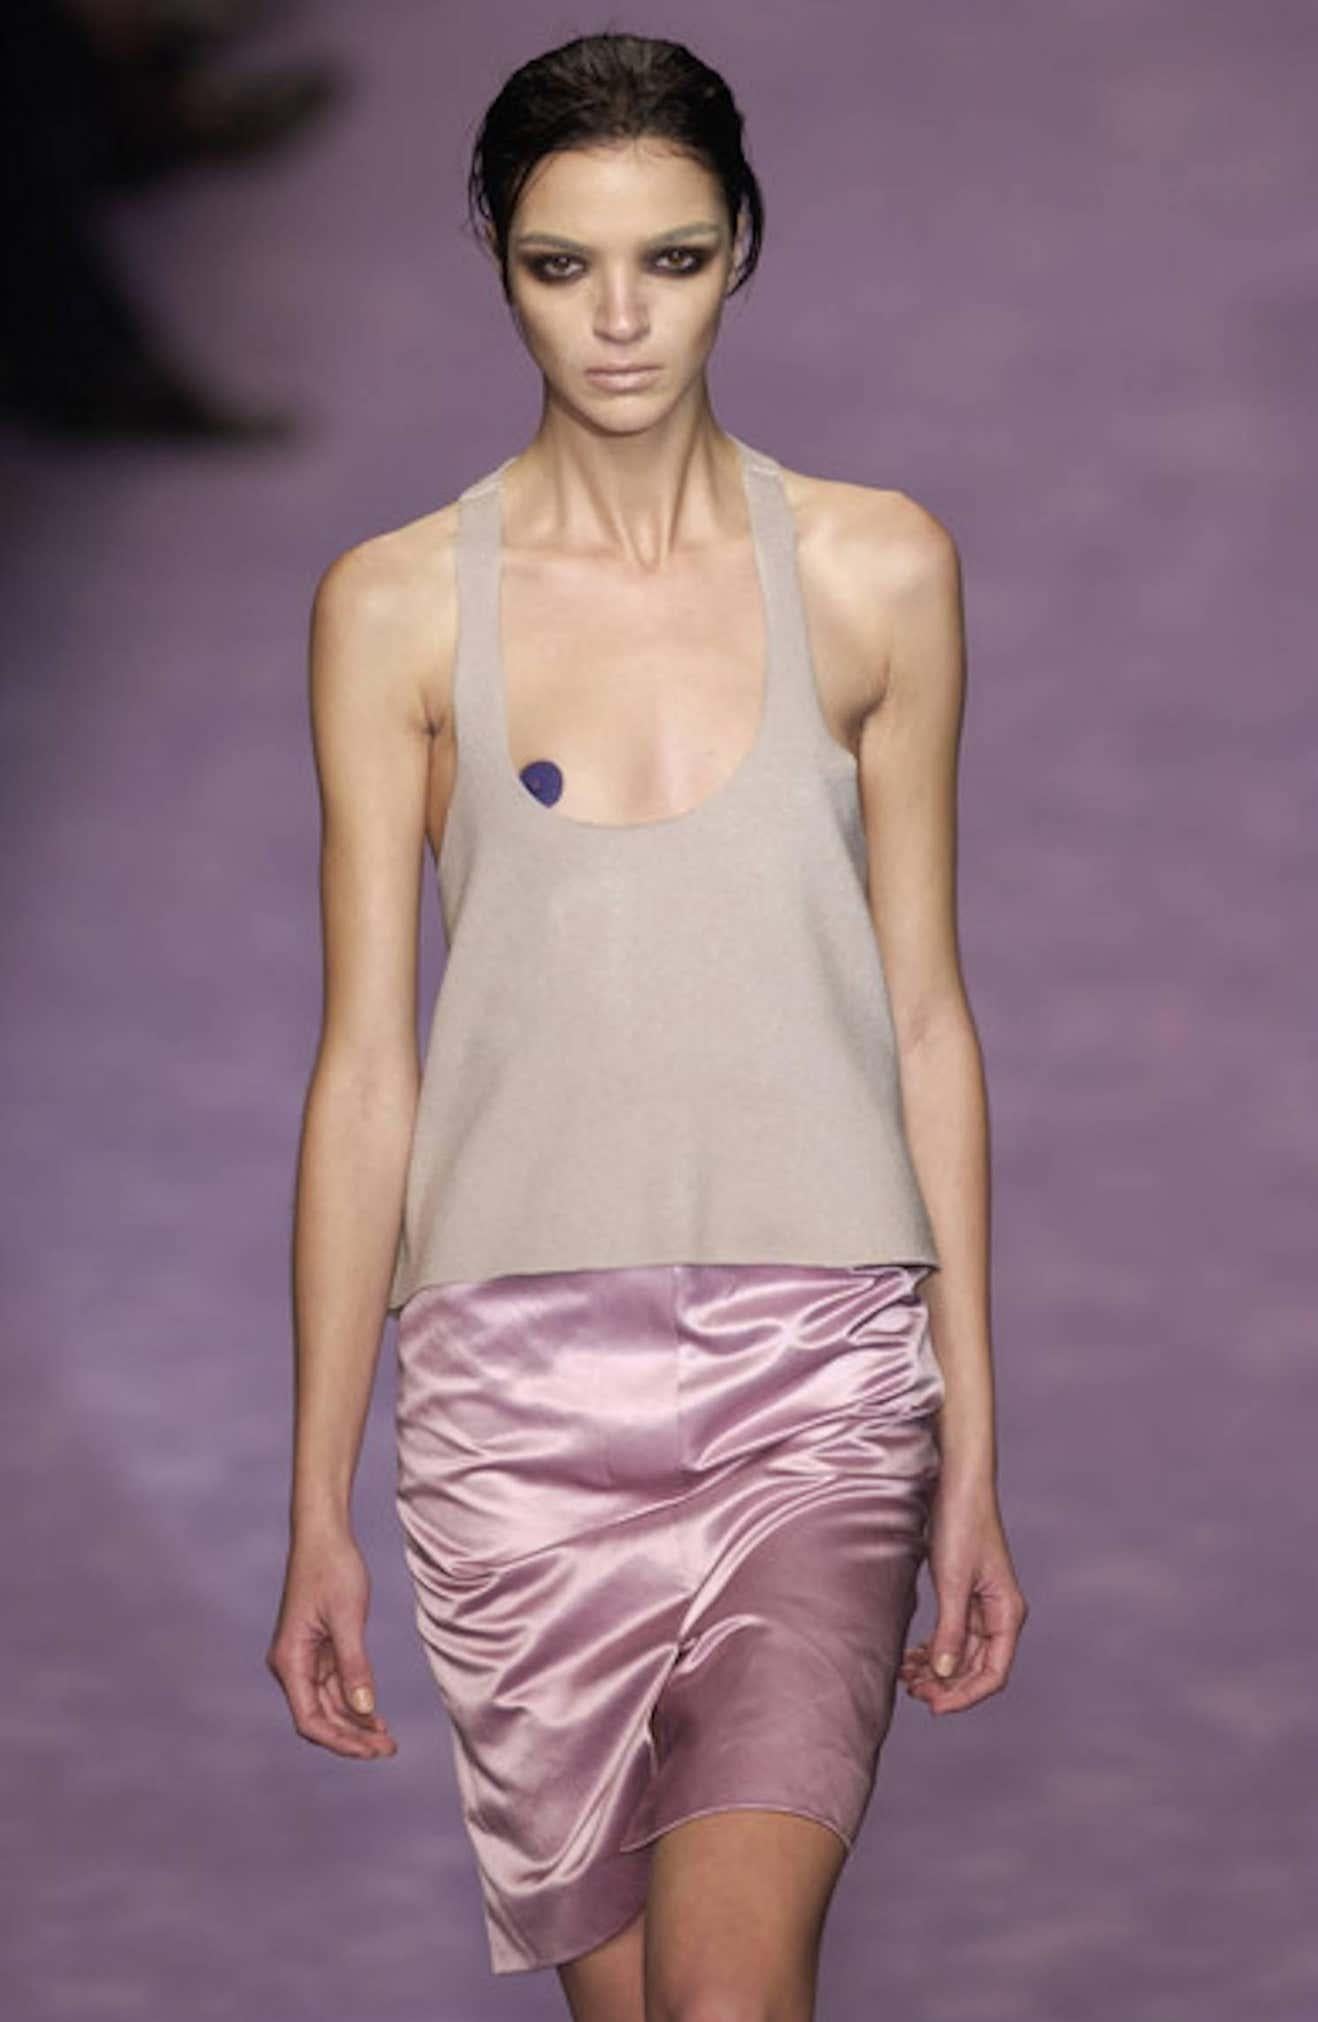 Women's S/S 2003 Yves Saint Laurent by Tom Ford Runway Female Body Print Lavender Skirt For Sale